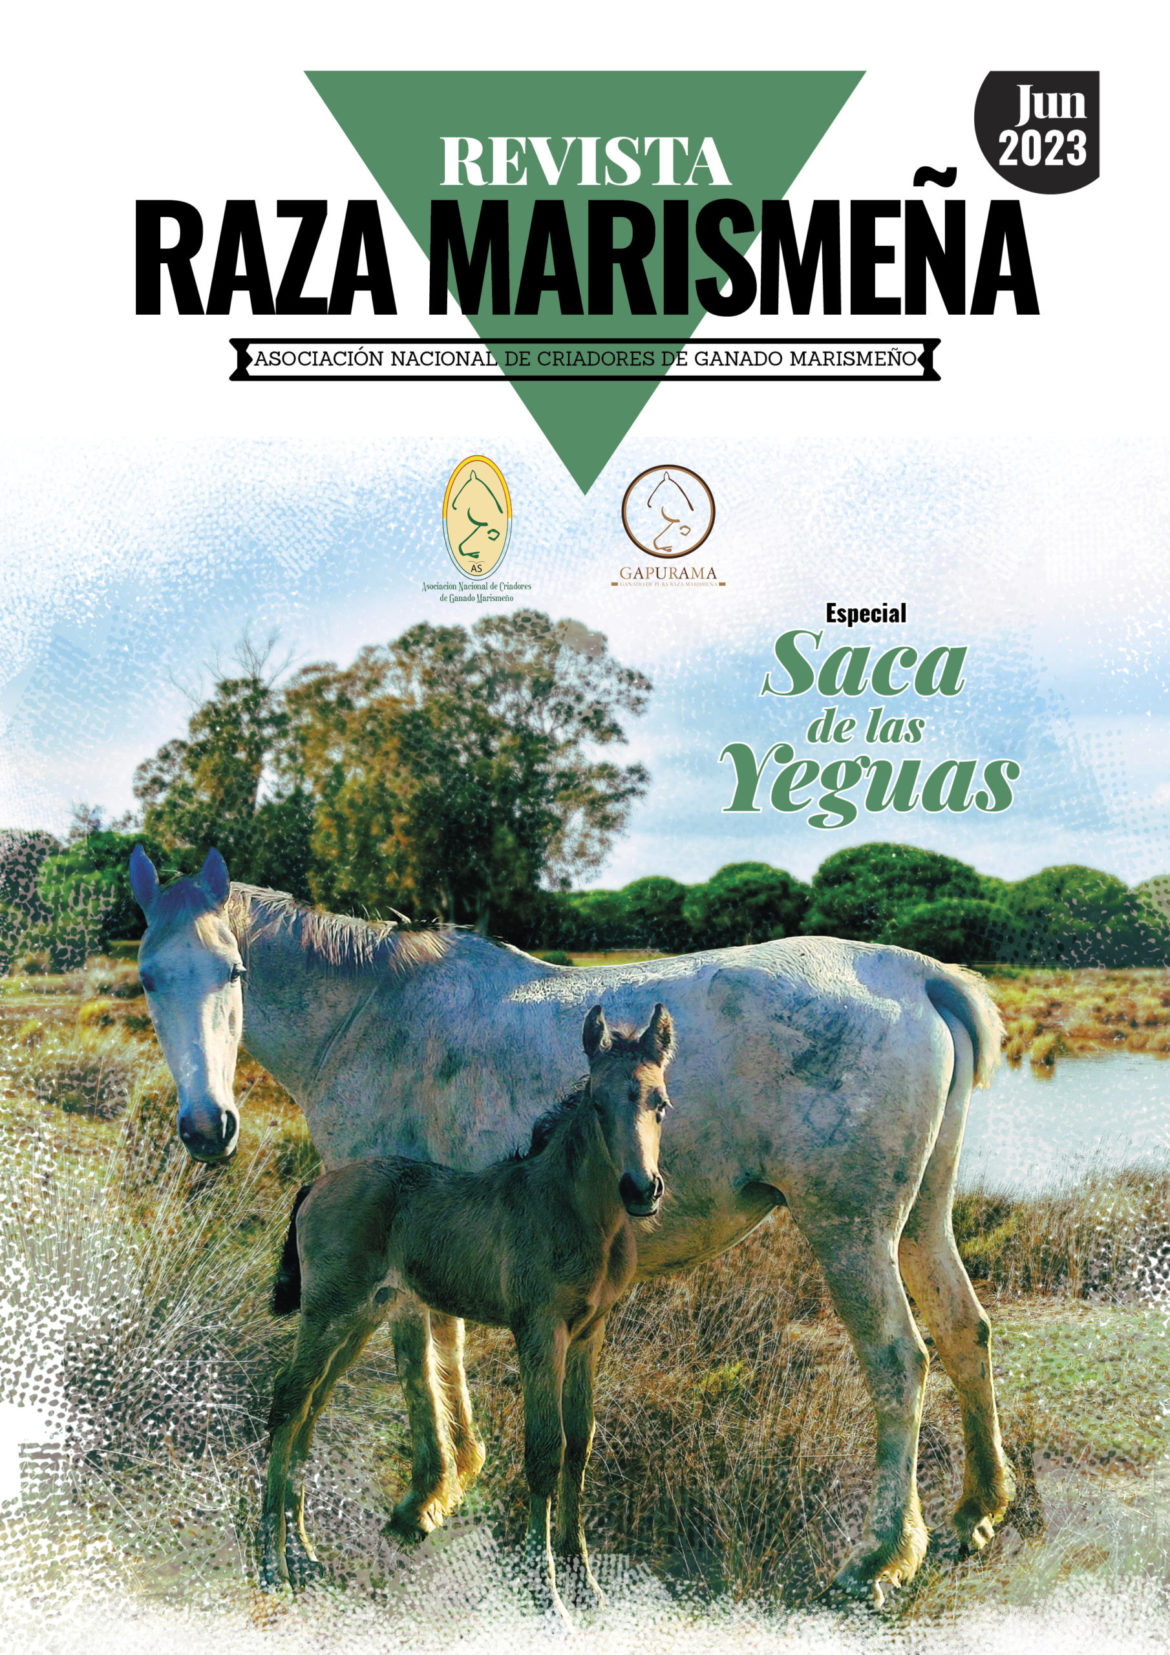 Revista-RAZA-MARISMENA_2023-scaled.jpg